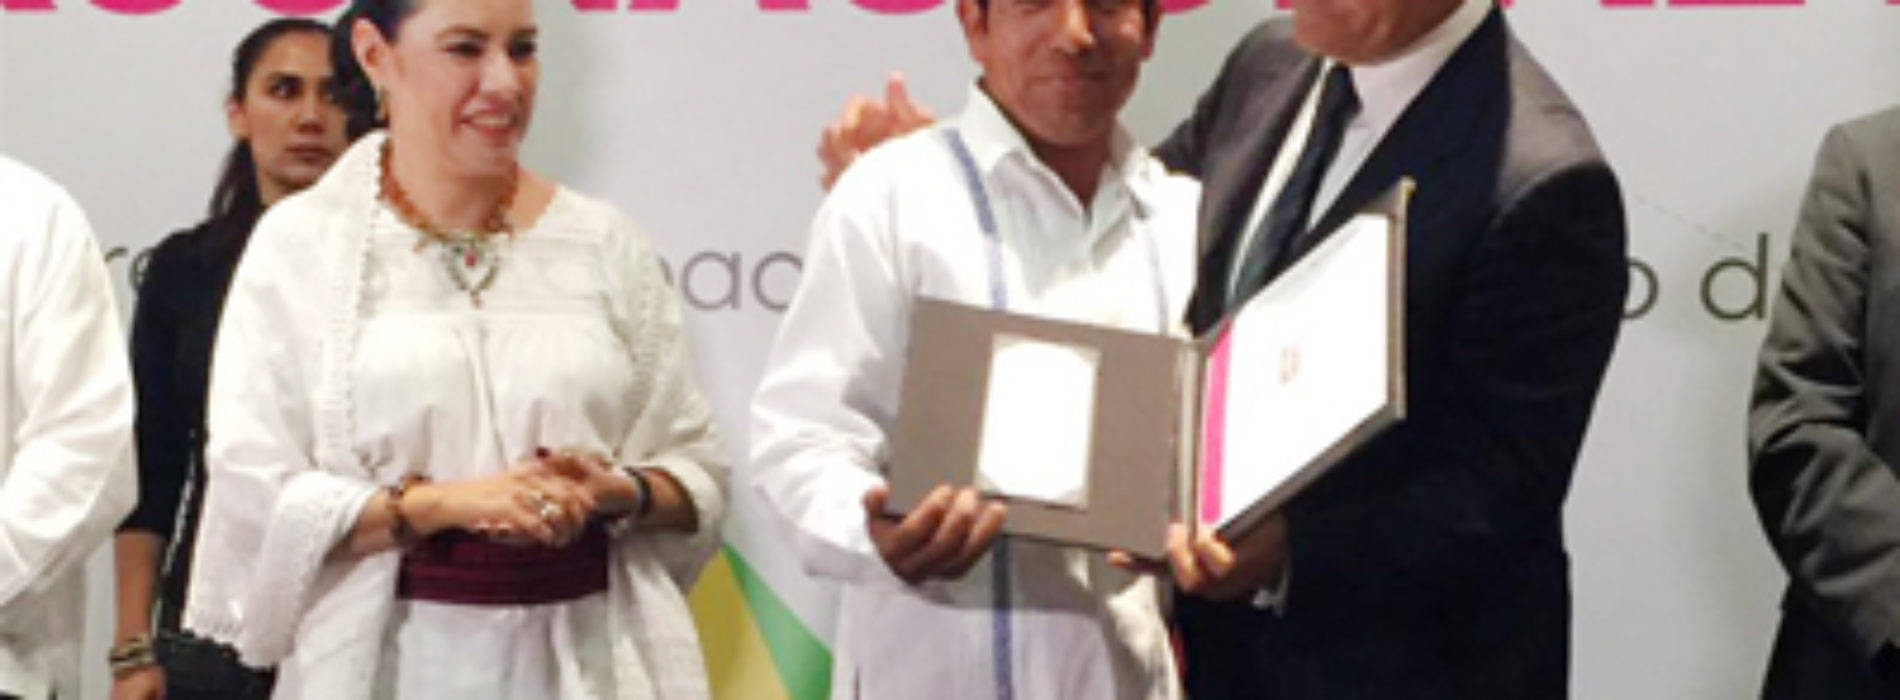 Artesanos oaxaqueños destacan en IV Concurso Nacional Textiles 2016